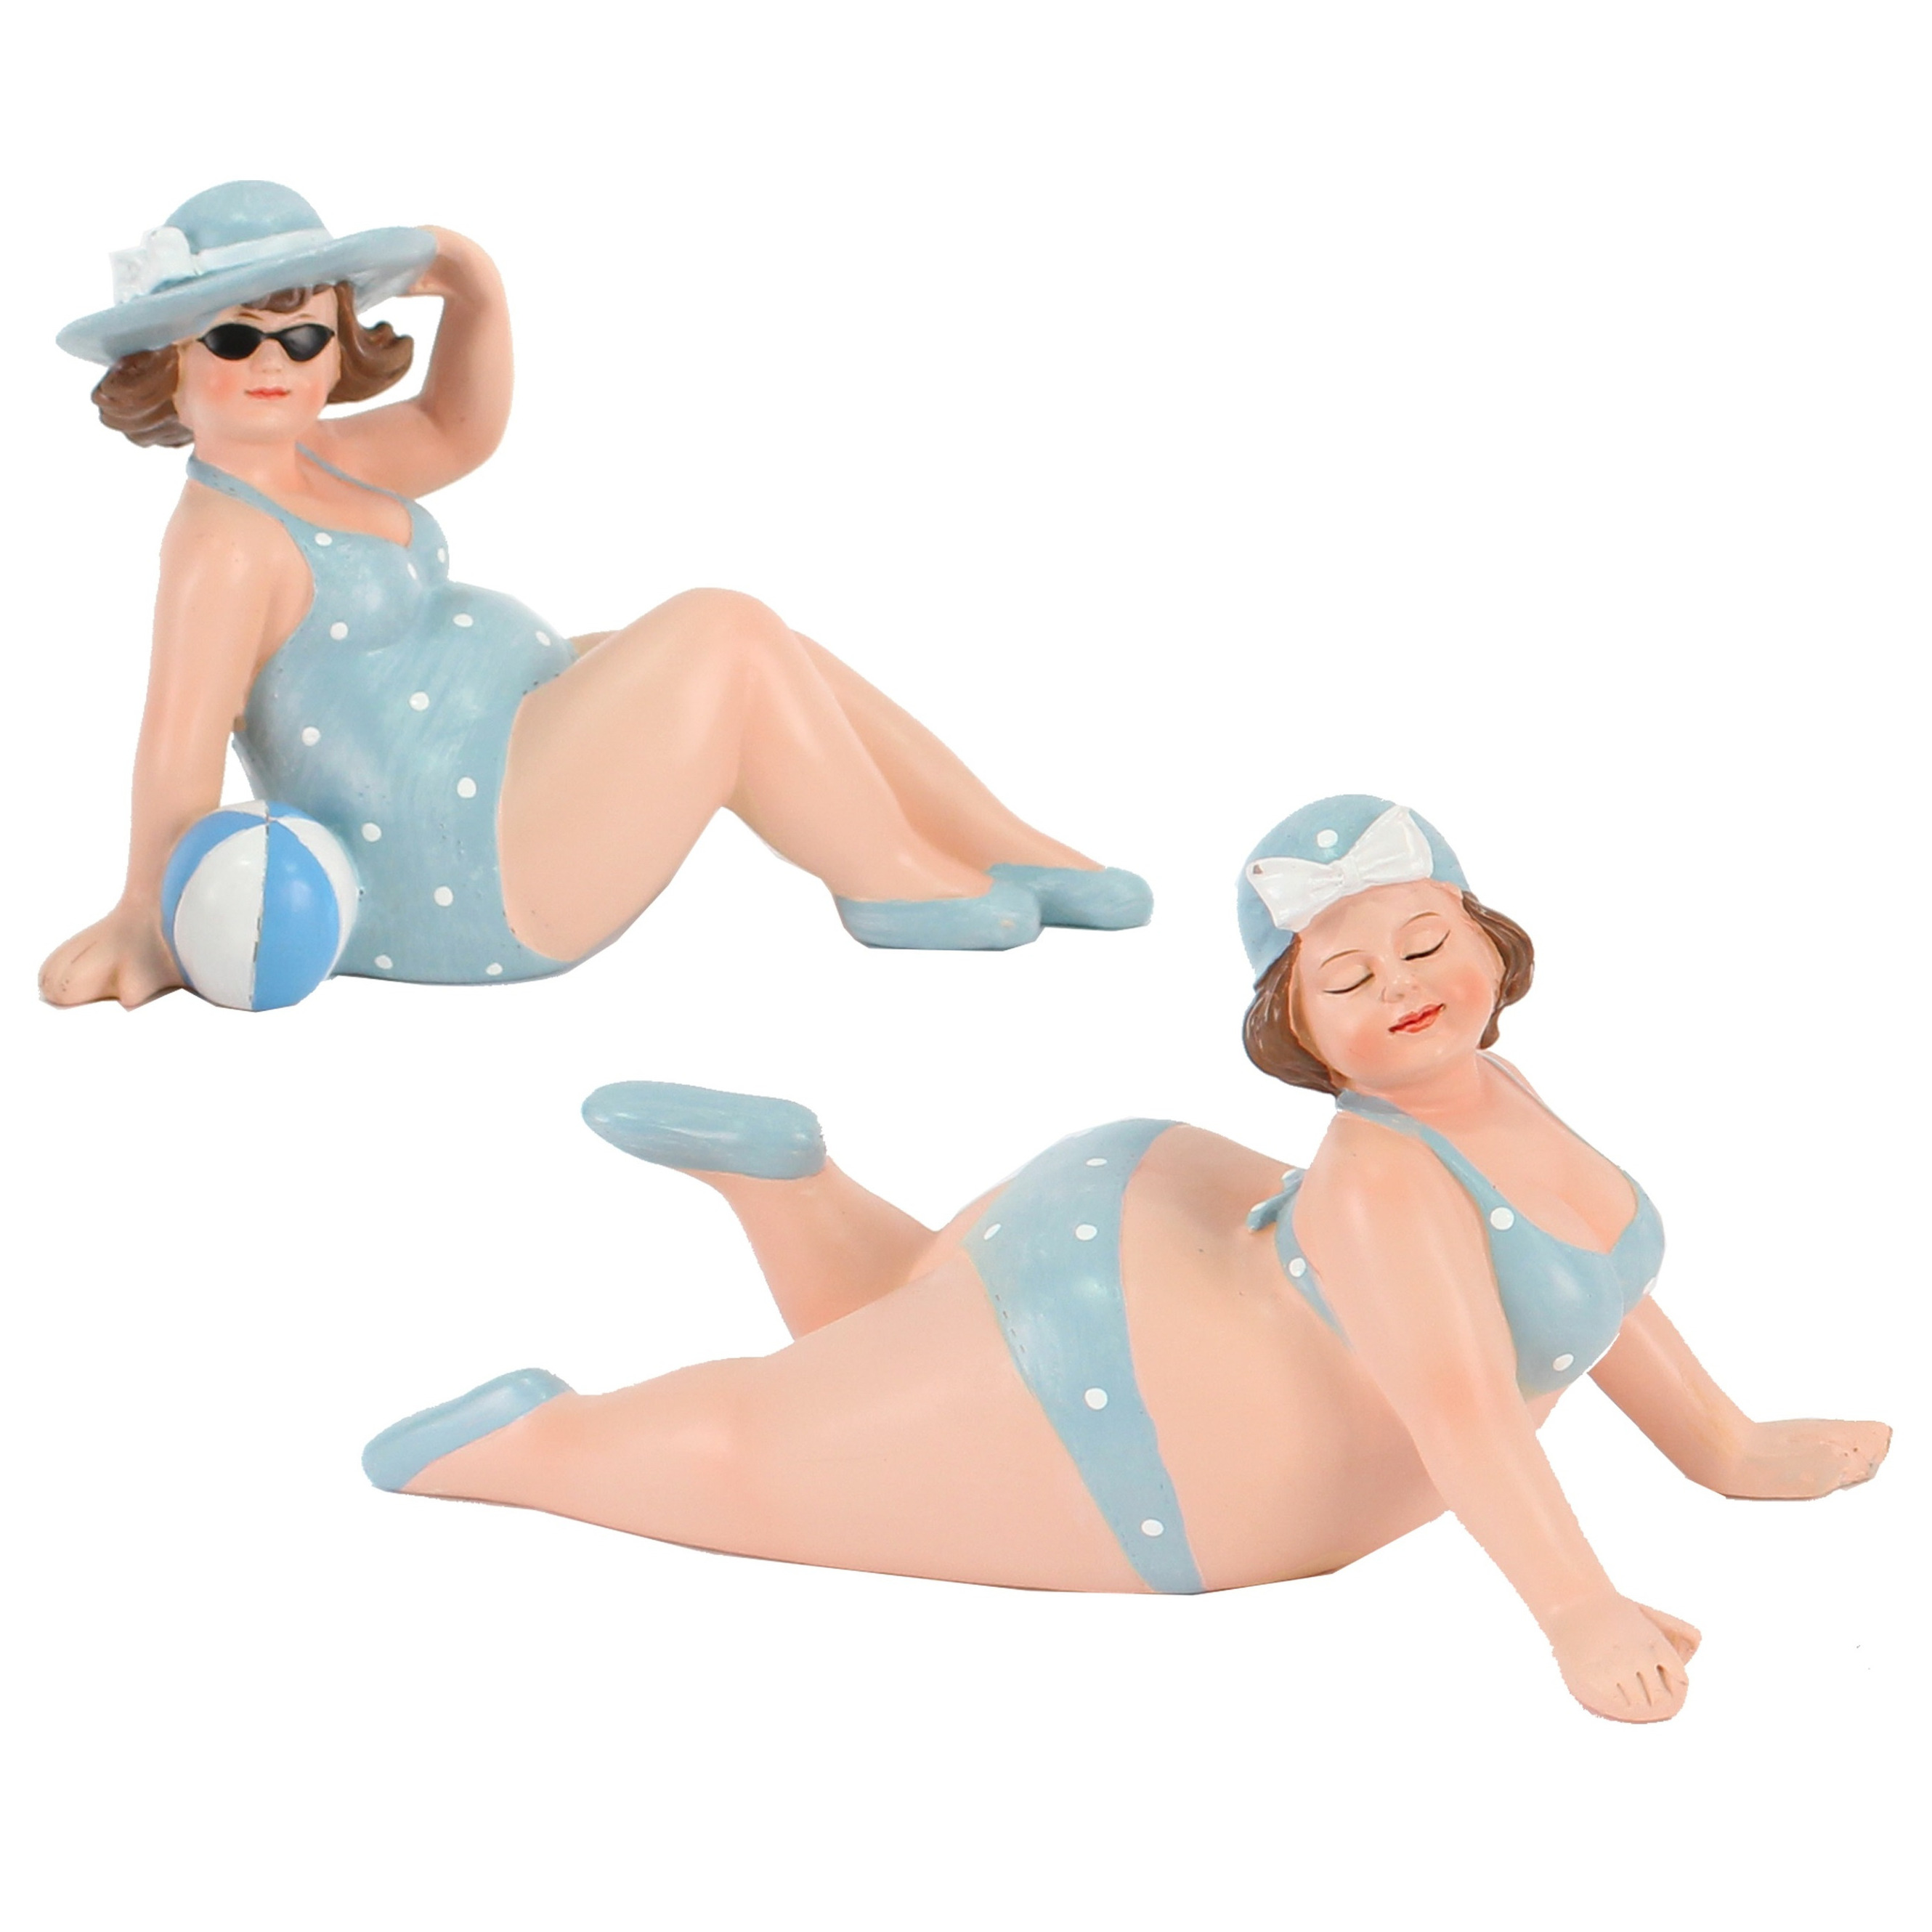 Woonkamer decoratie beeldjes set 2 dikke dames blauw badpak 17 cm